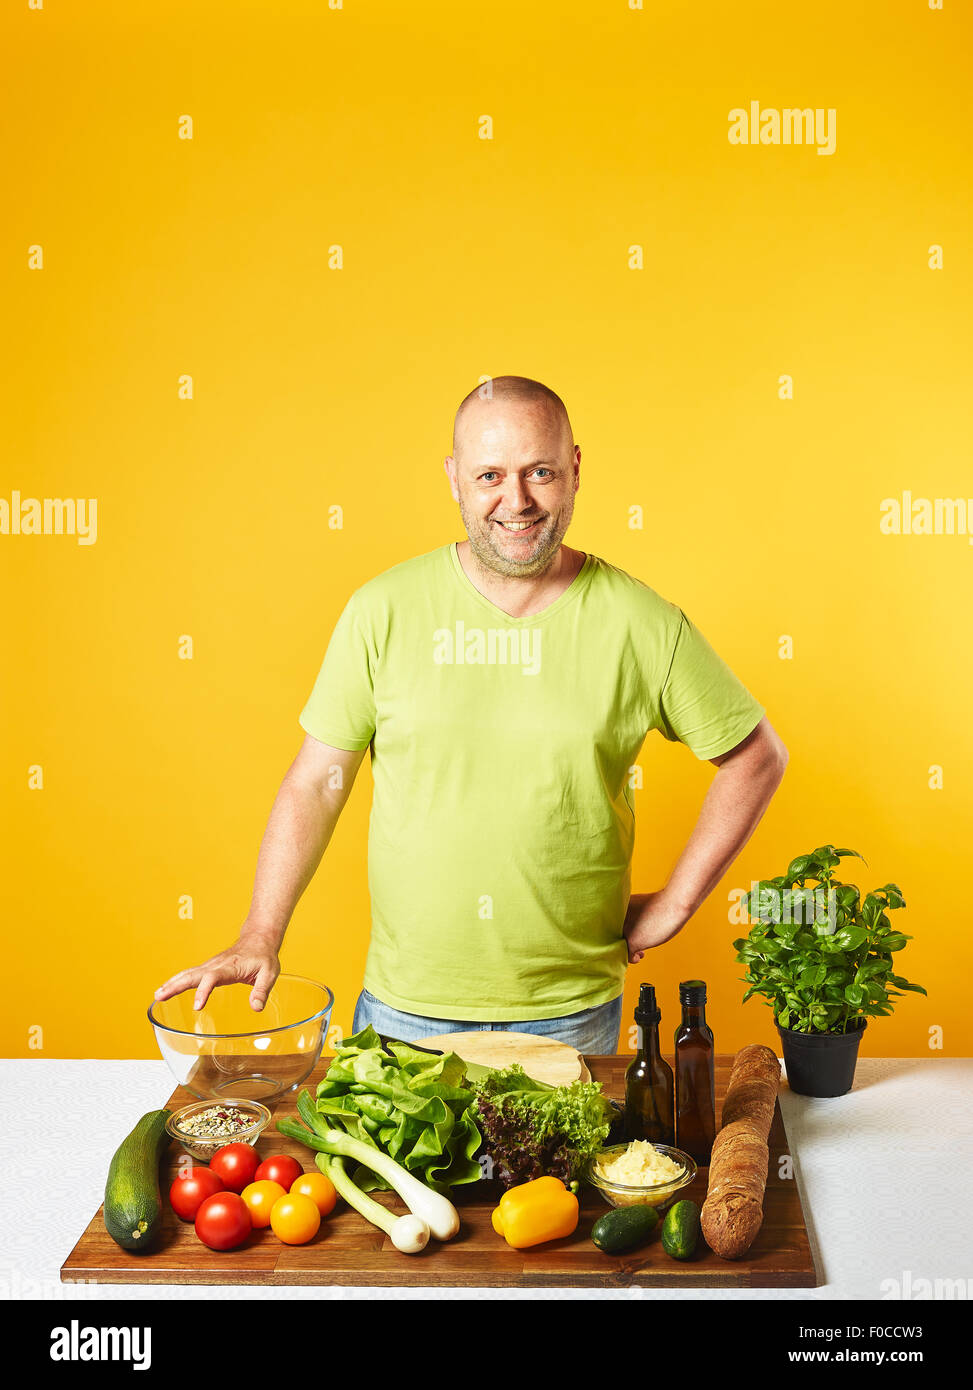 Insalata fresca ingredienti sul tavolo, uomo di mezza età - copia di spazio e di sfondo giallo Foto Stock